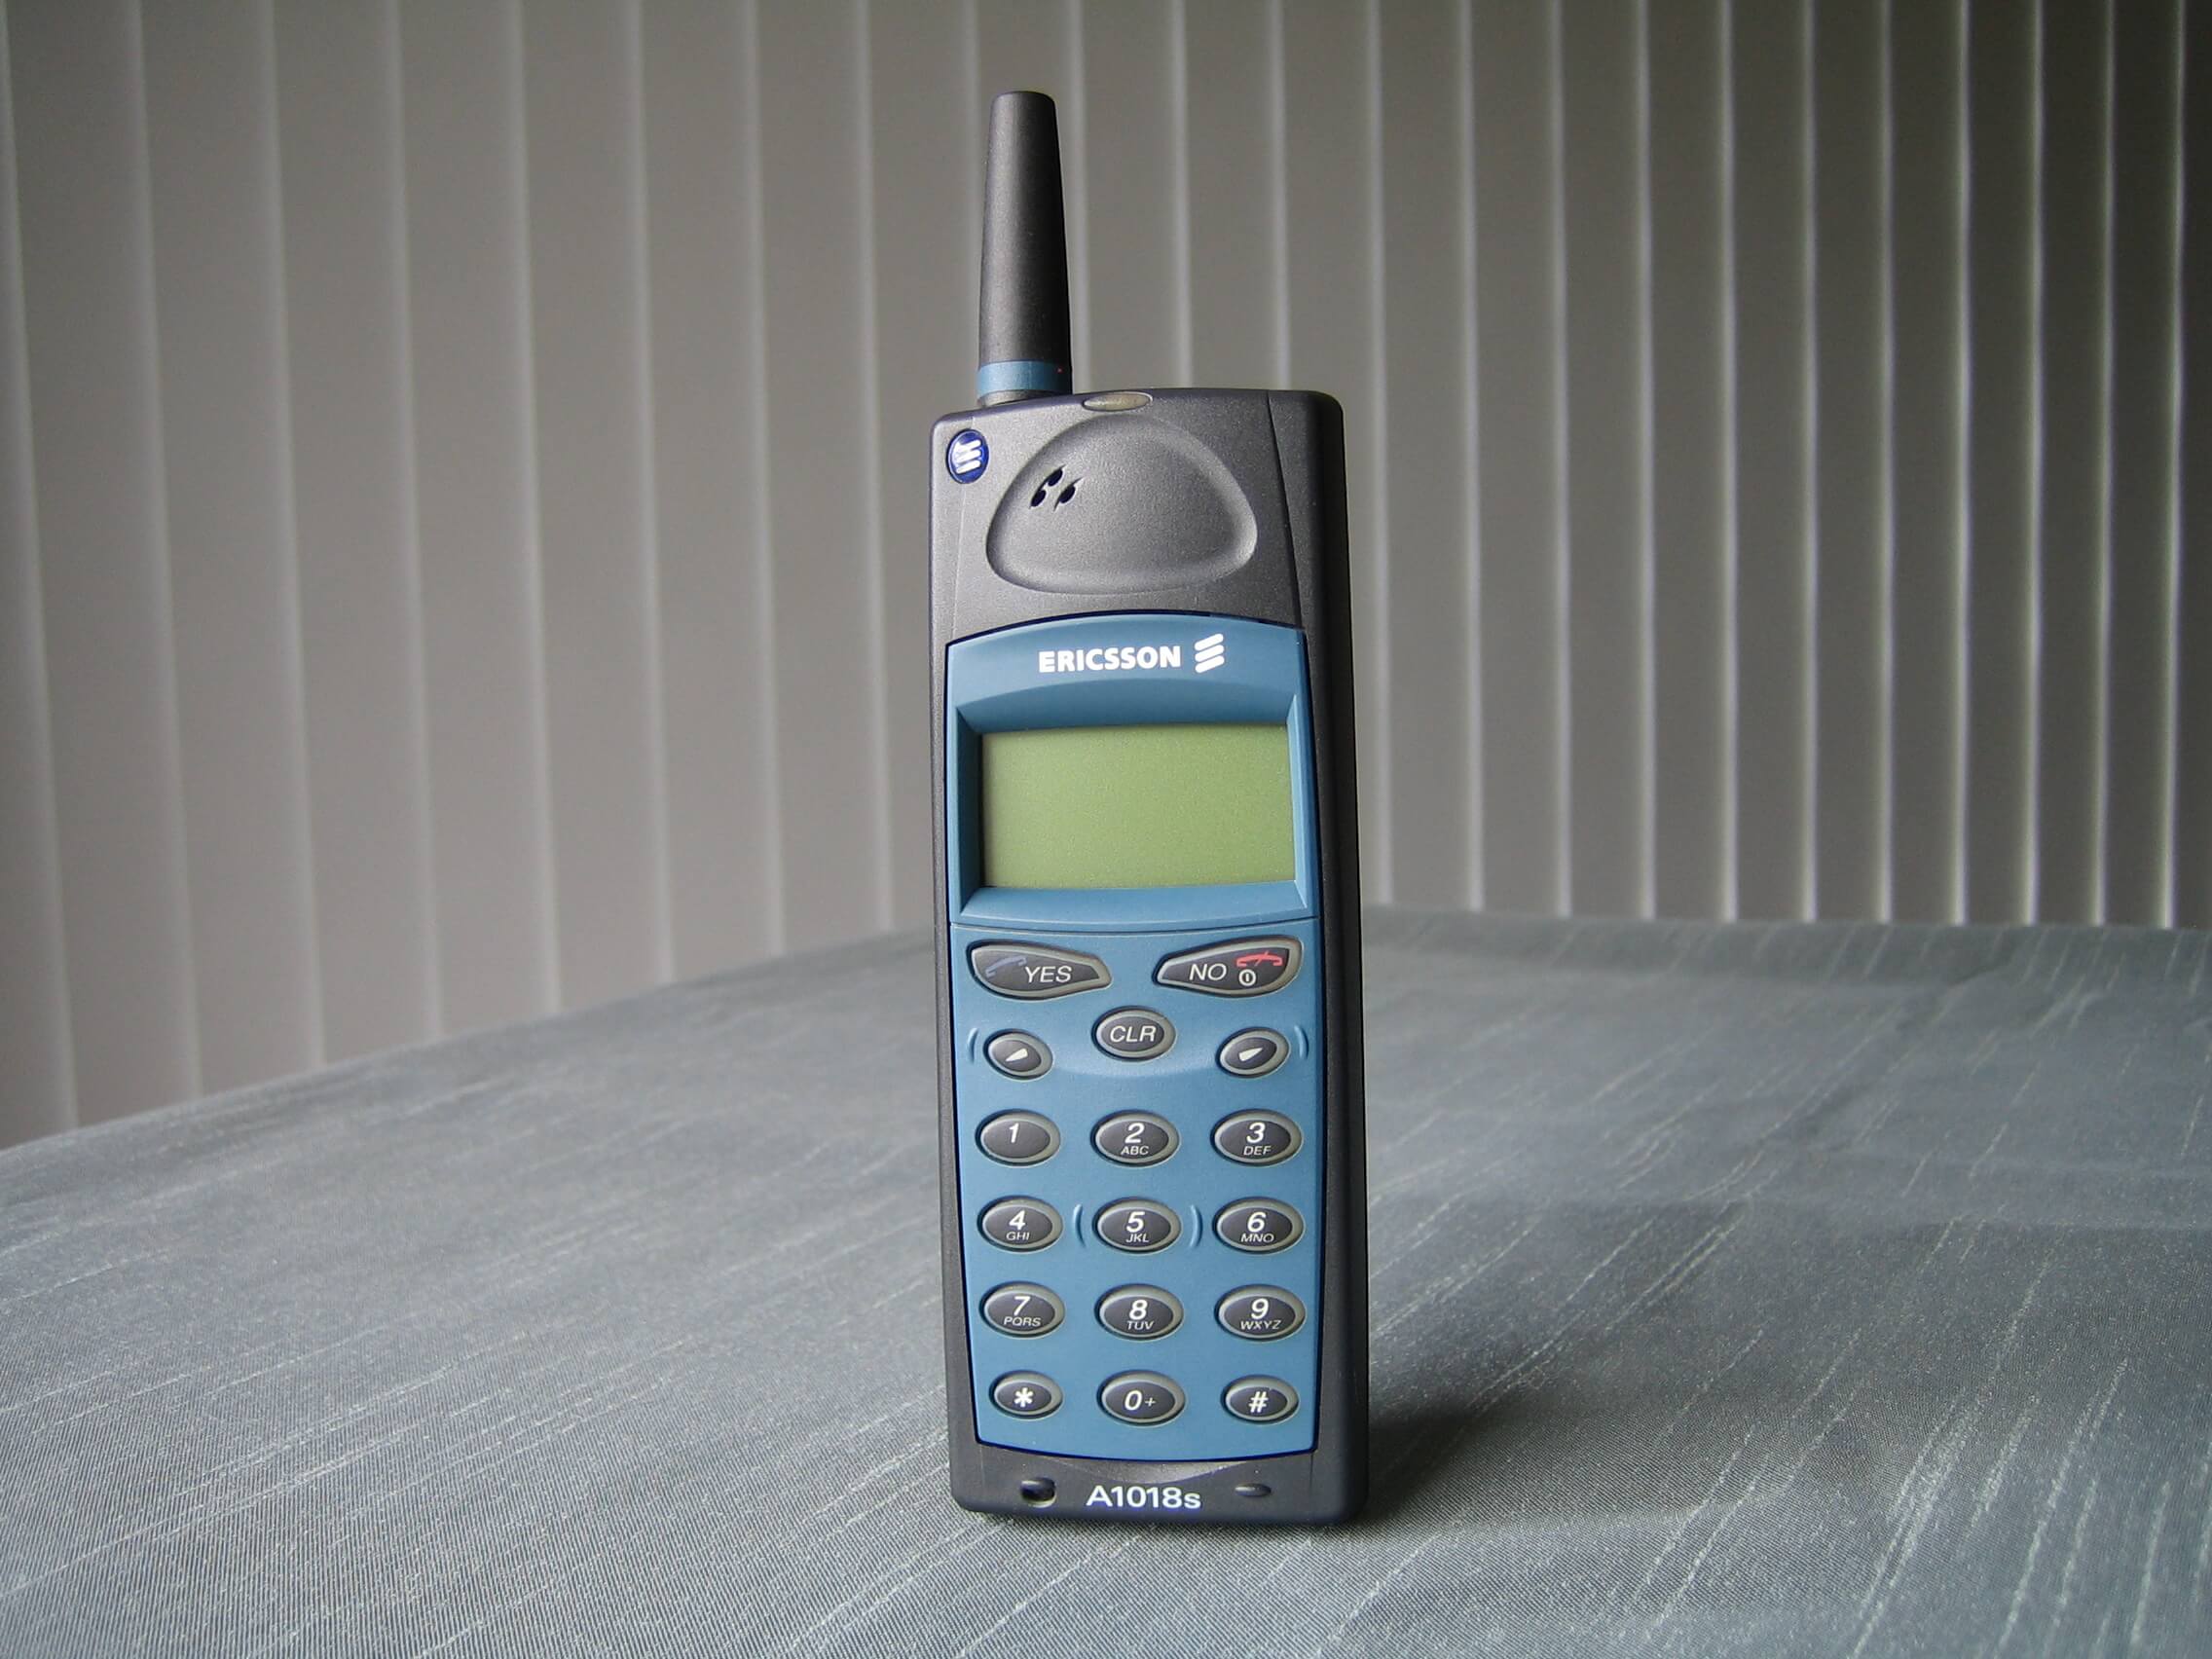 Фото телефона эриксон. Ericsson a1018s. Сони Эриксон 1018. Sony Ericsson a1018s. Антенна Ericsson a1018s.